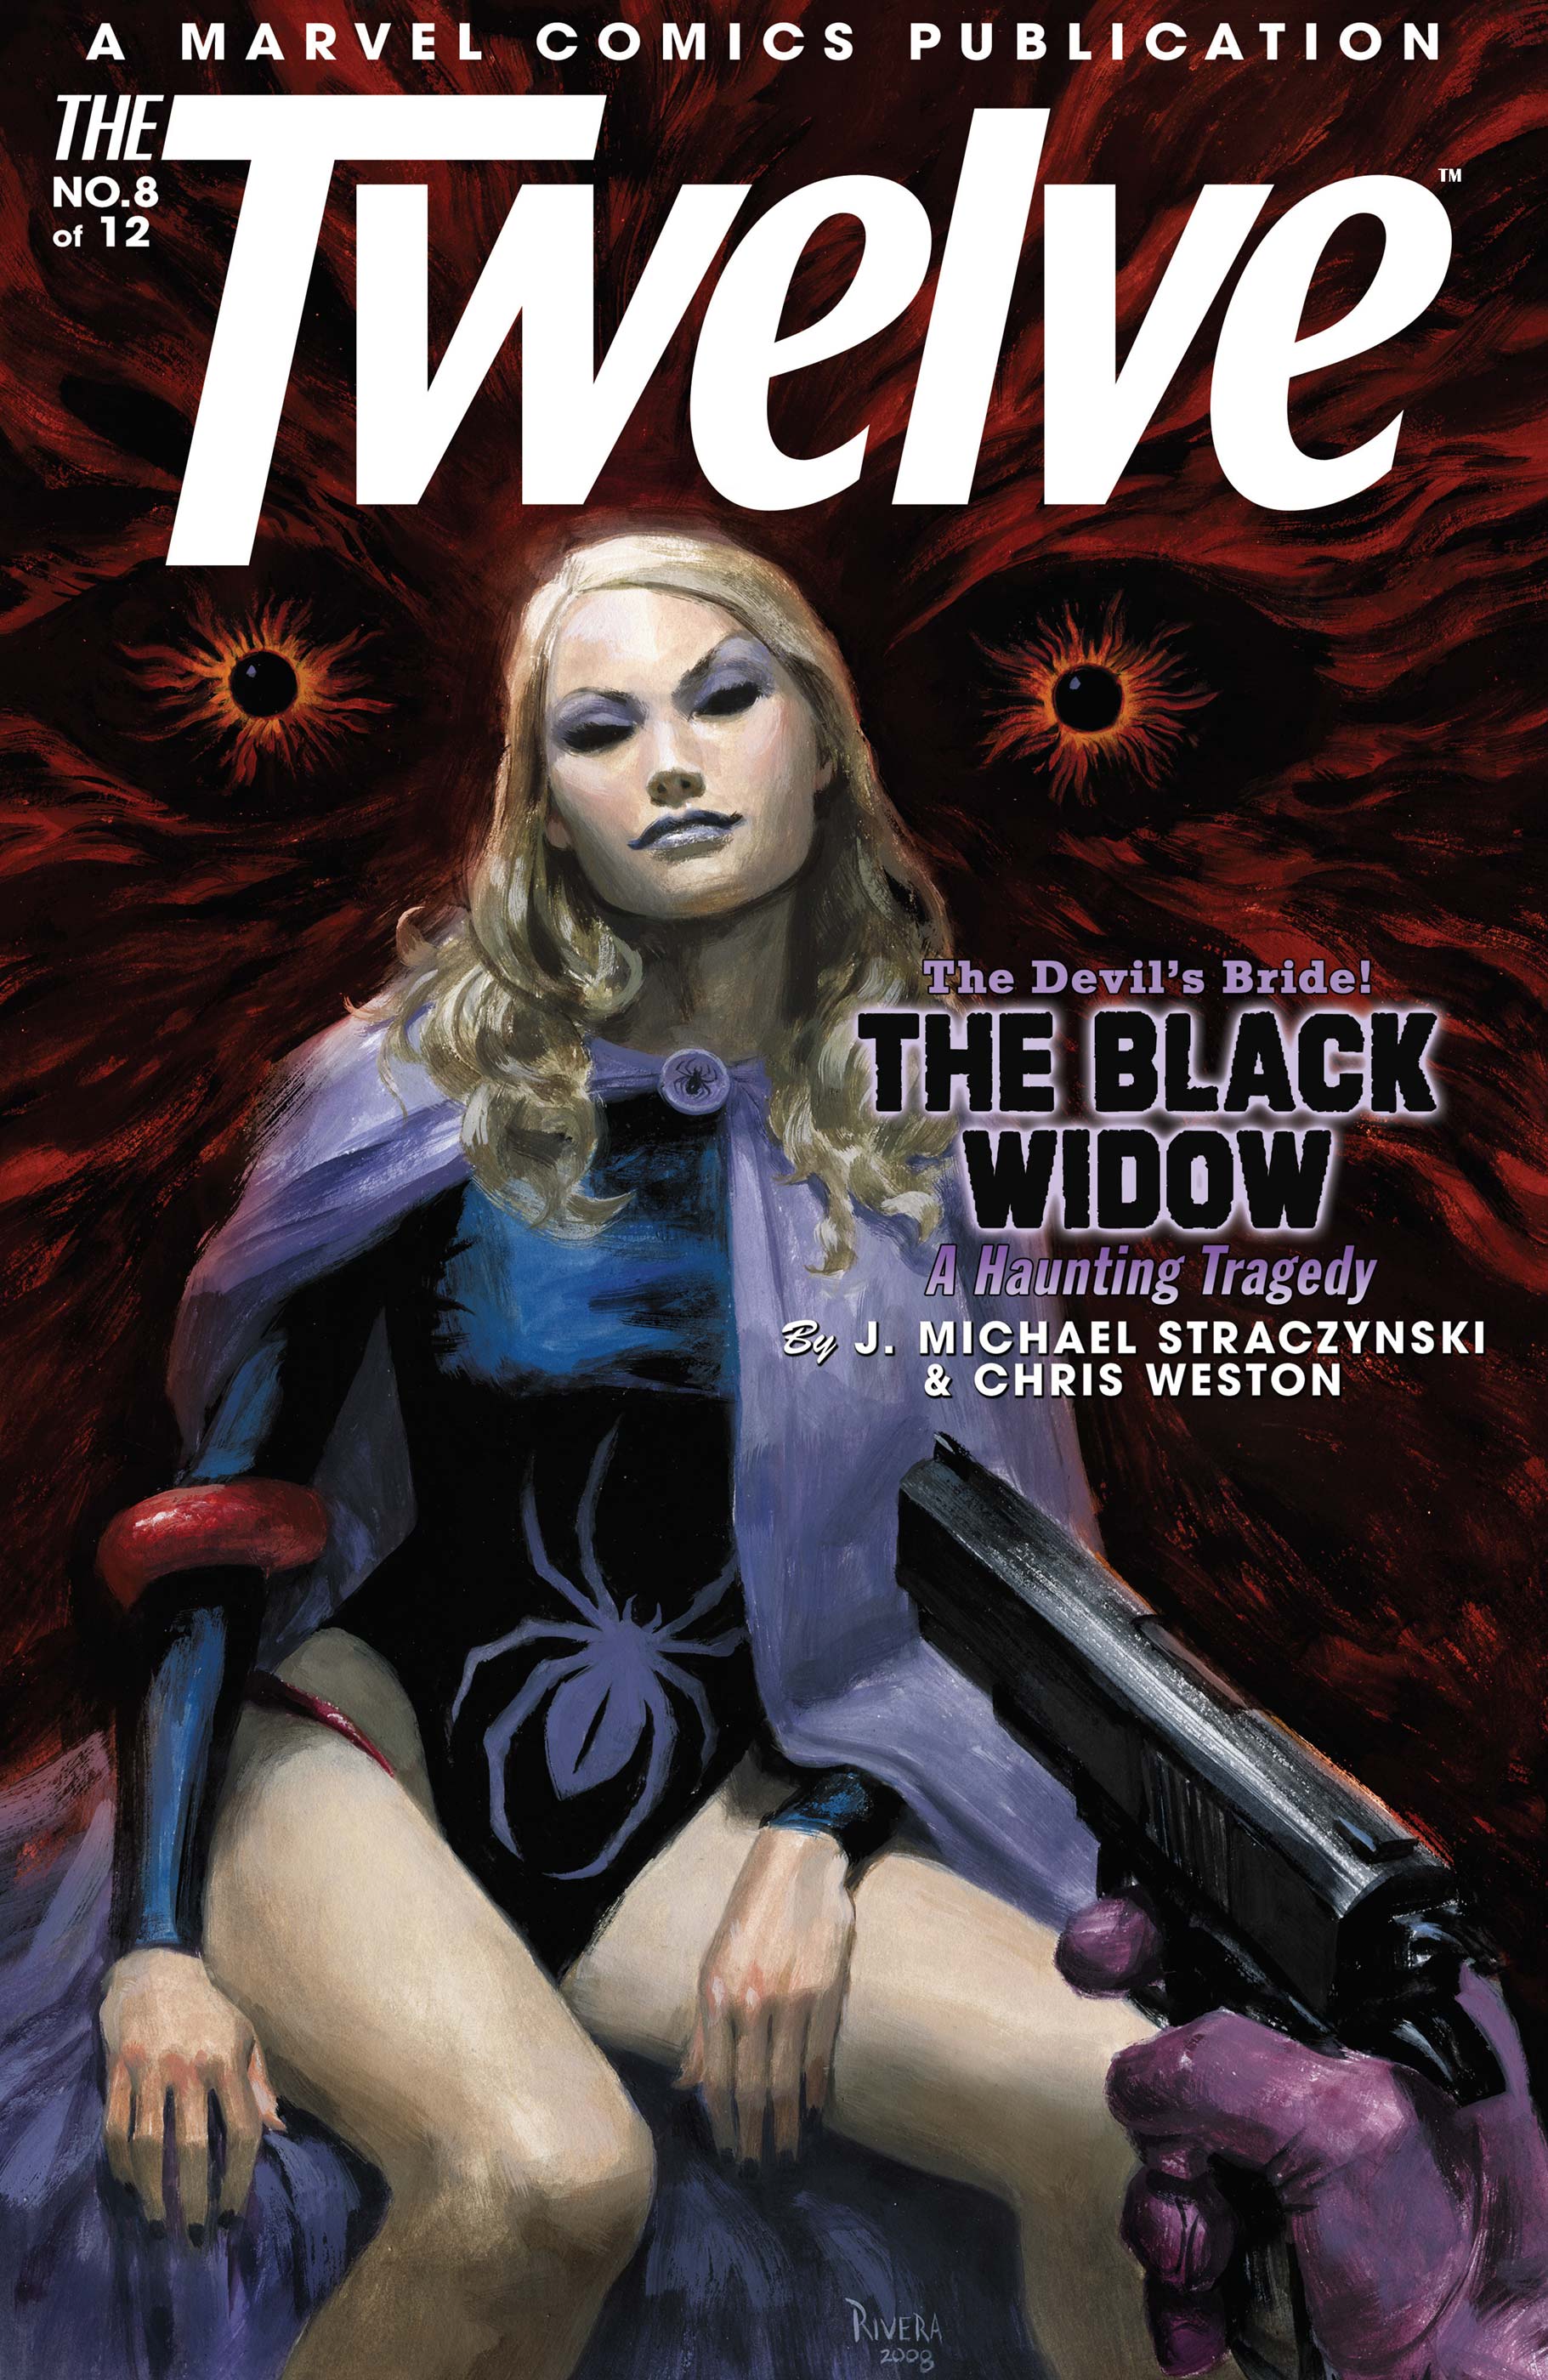 The Twelve (2007) #8